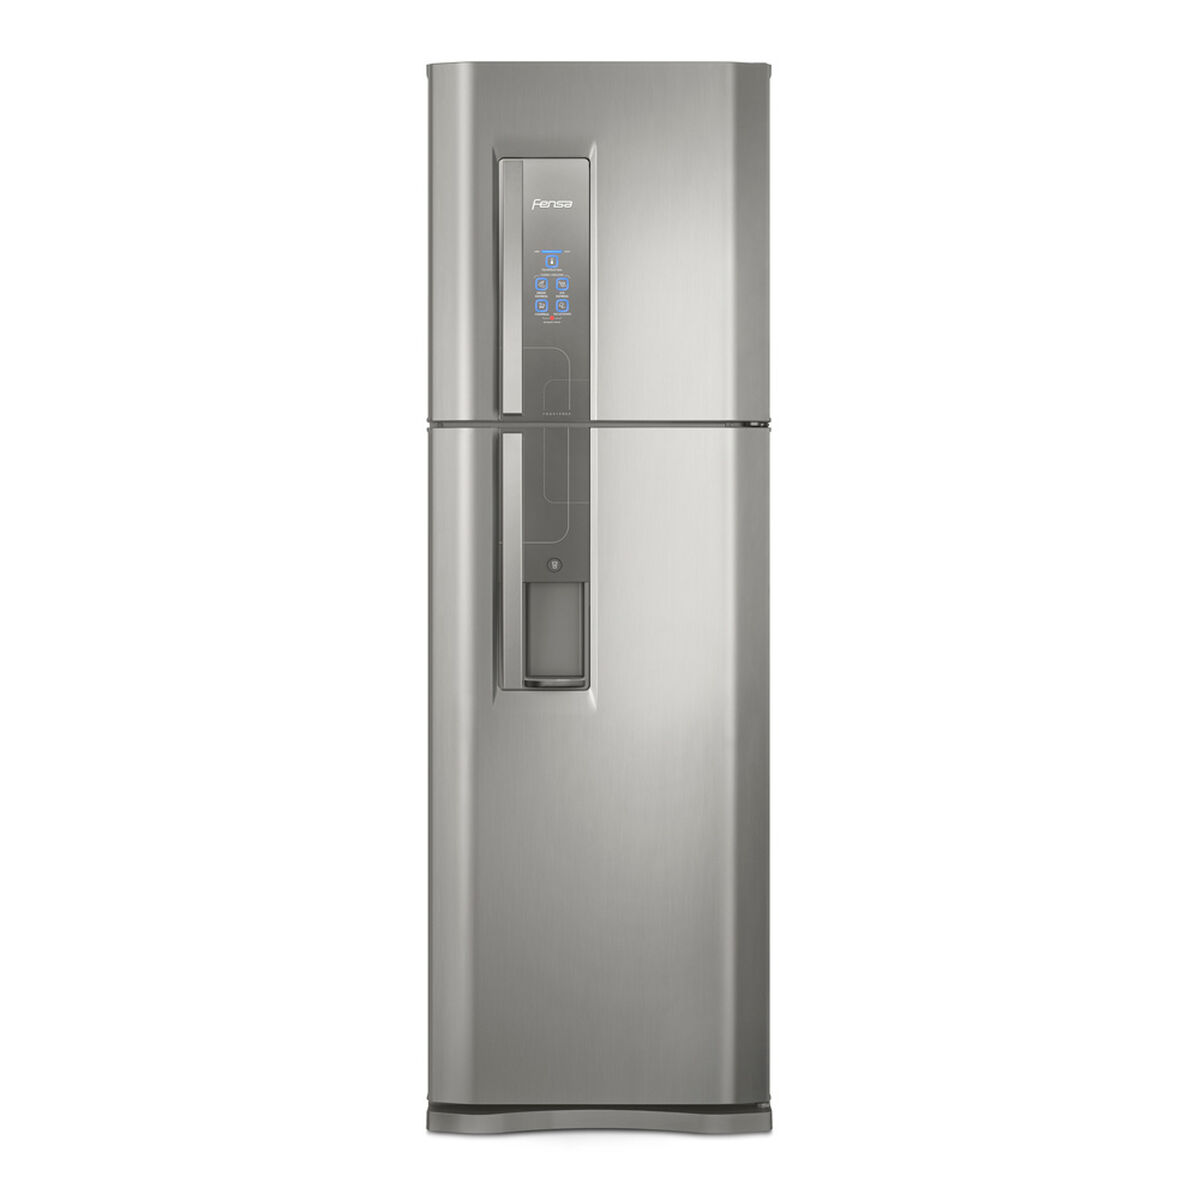 Refrigerador No Frost Fensa DW44S 400 lts.